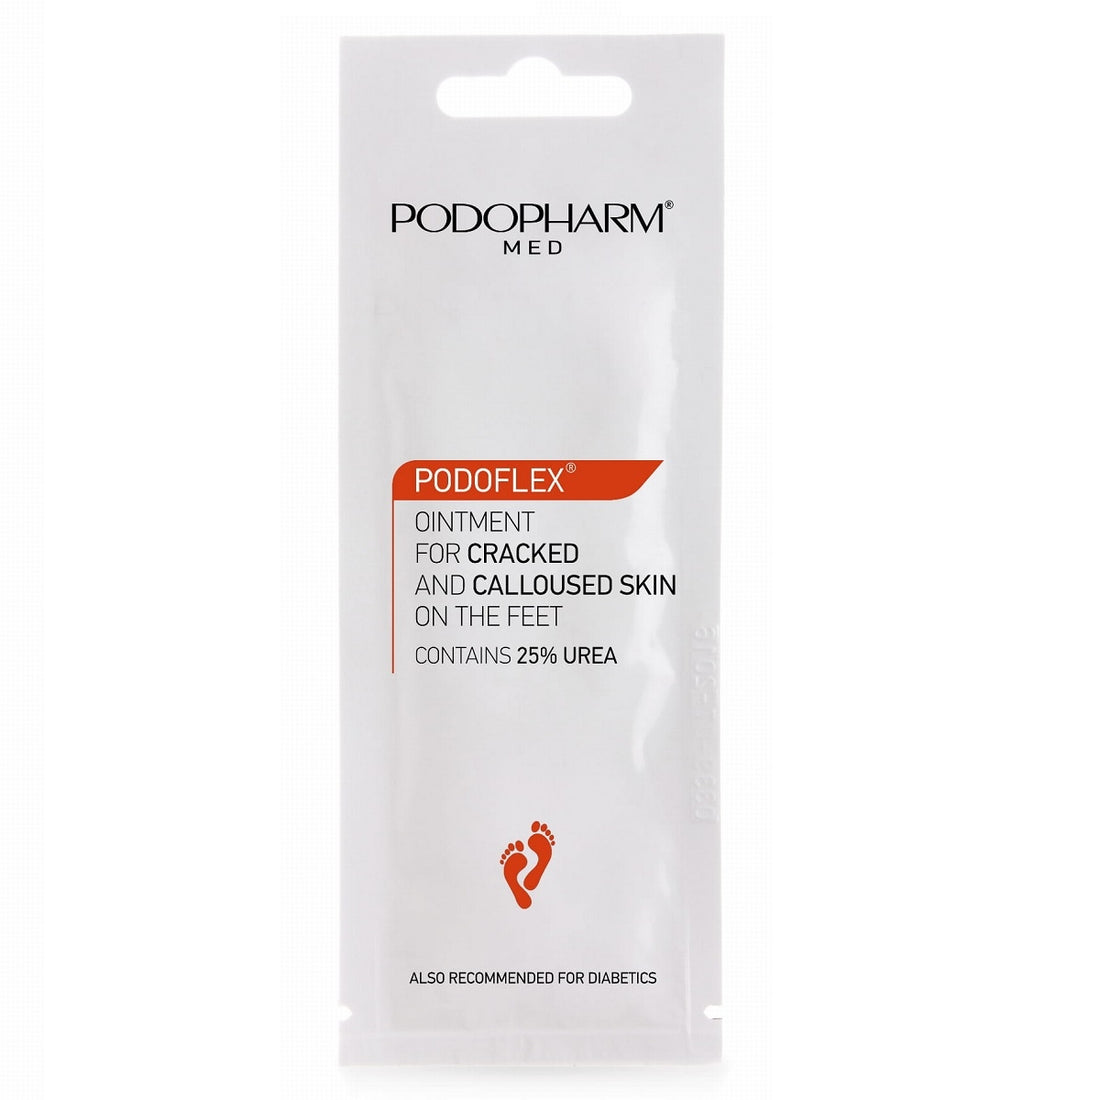 Podopharm Med Podoflex Ointment For Cracked And Calloused Skin On The Feet 25% Urea 10ml Podopharm